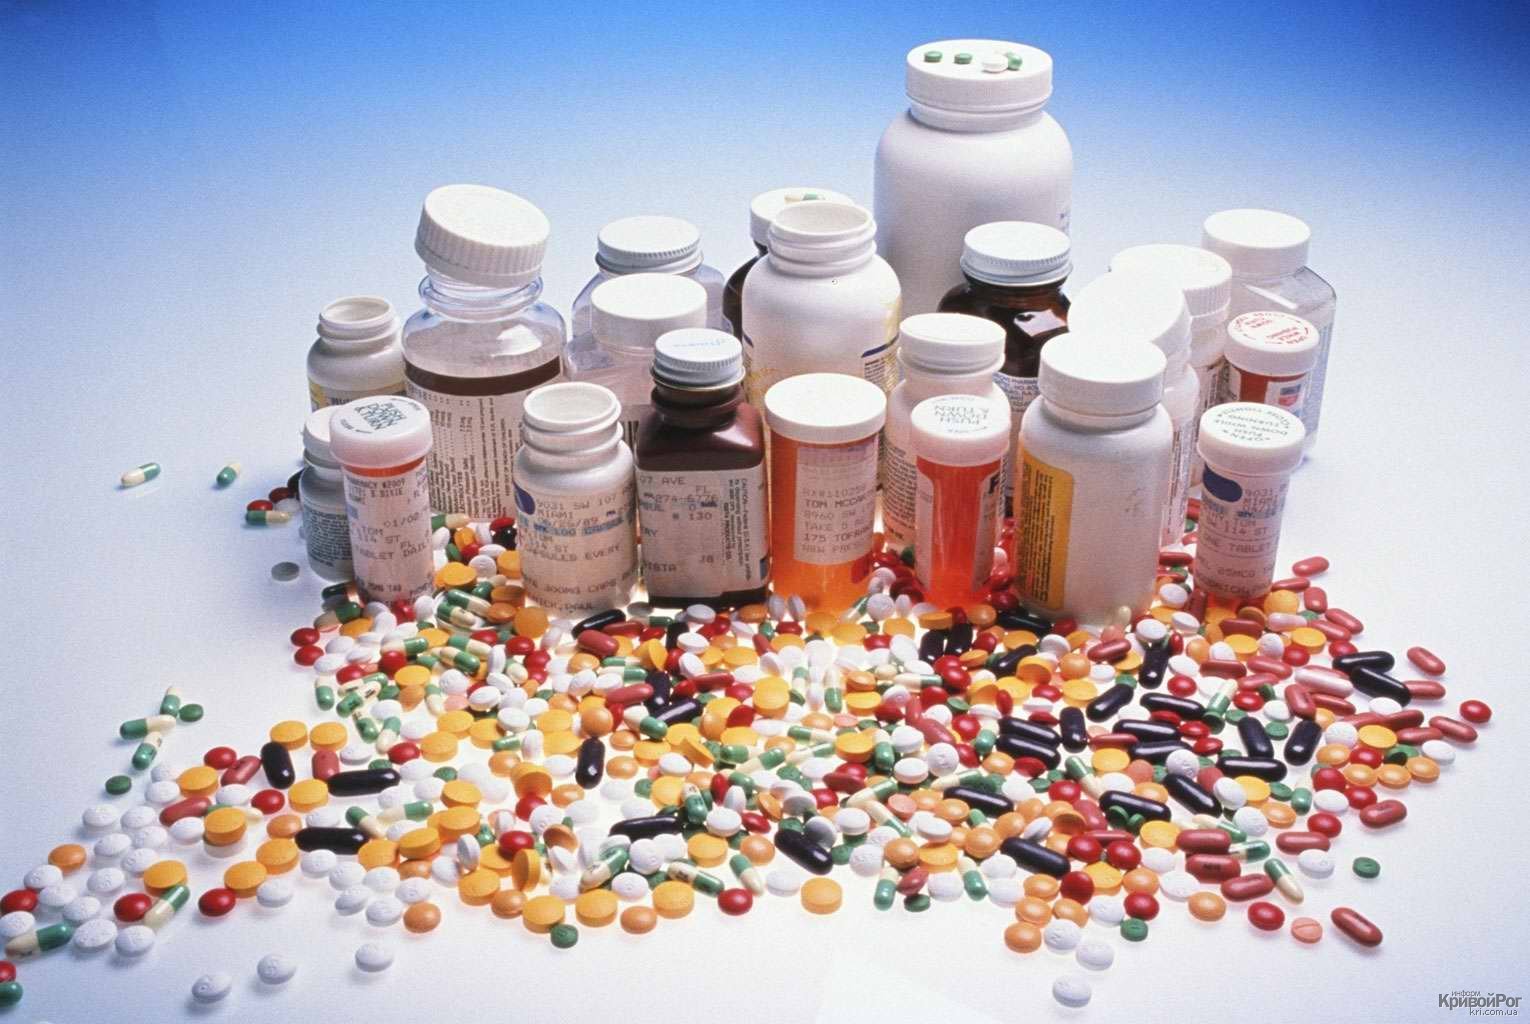 «Из 10 самых популярных лекарств доказана польза только двух!», — аналитик фармакологической компании